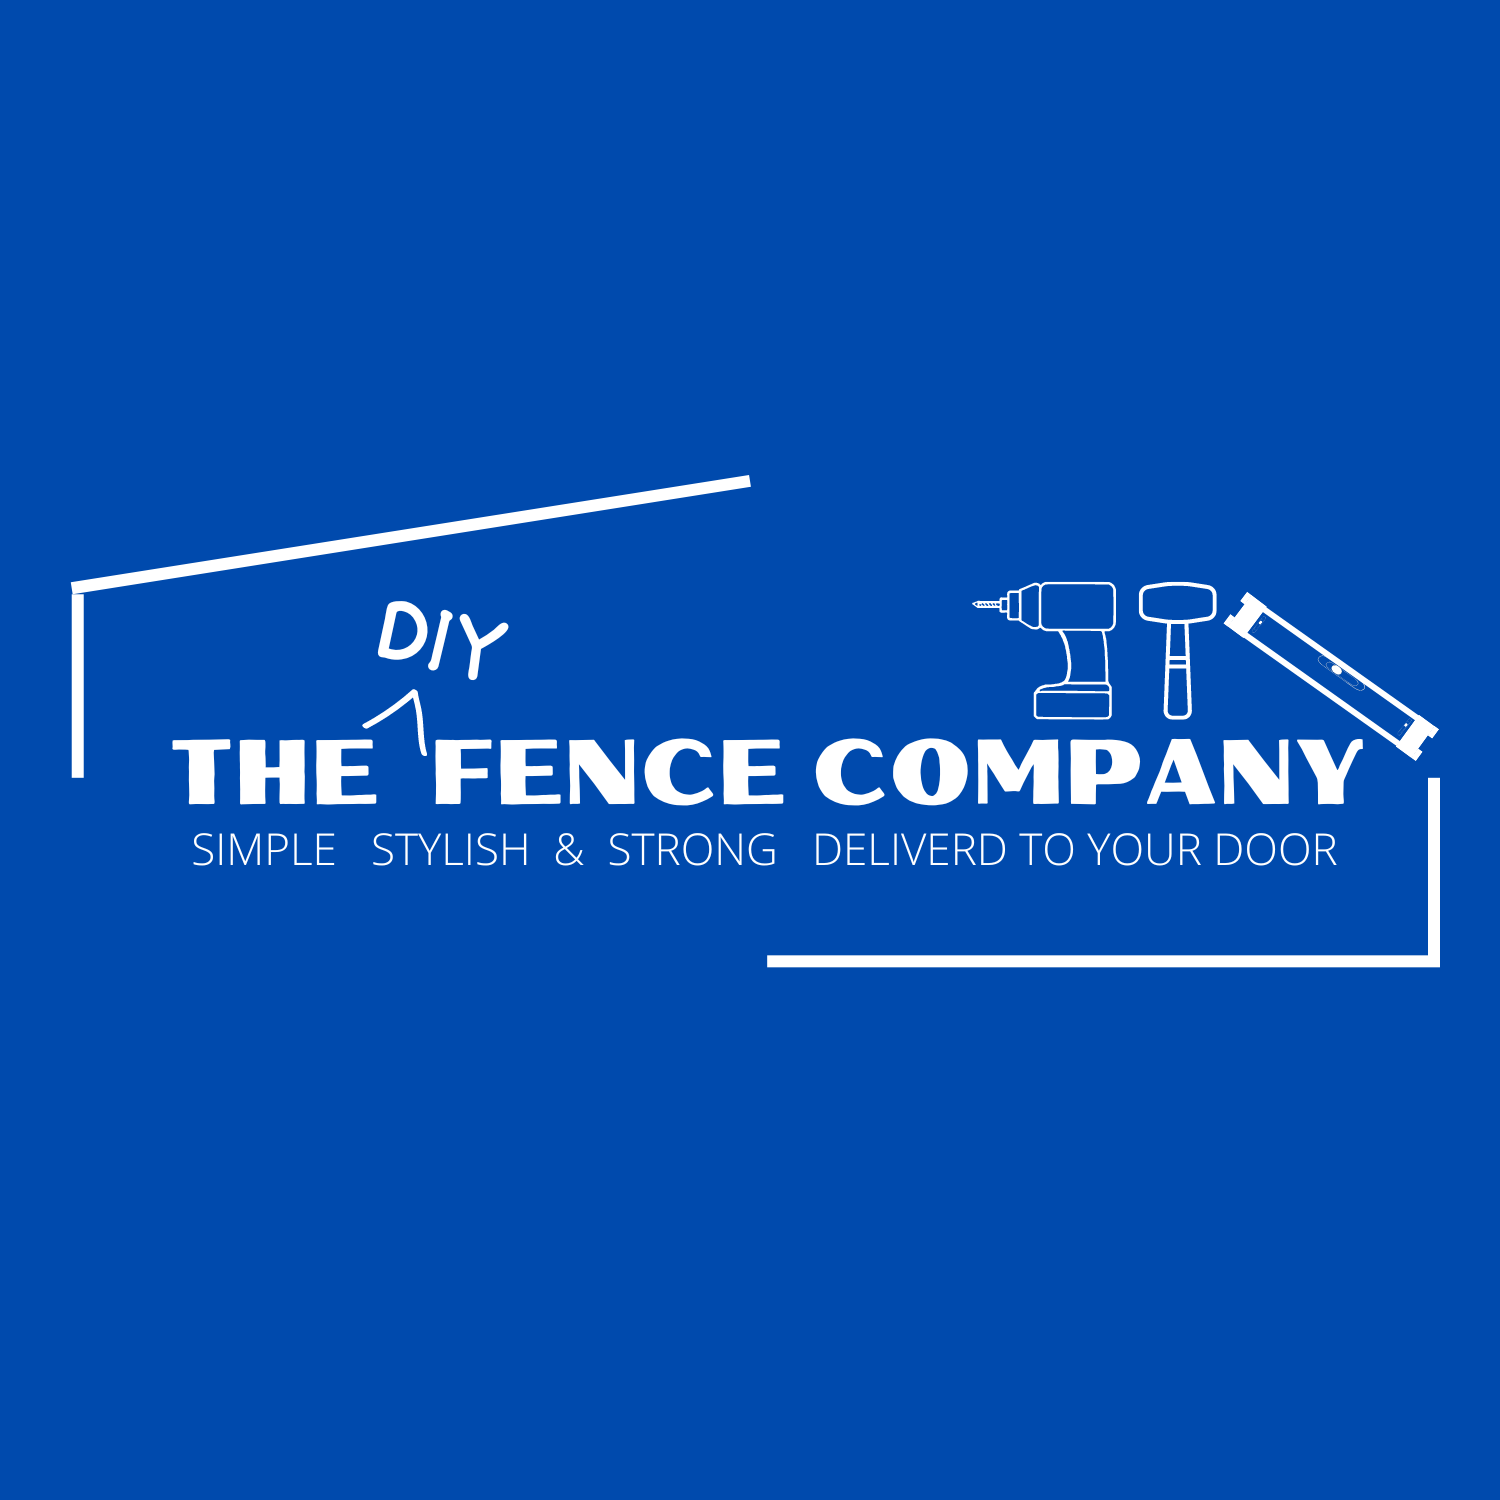 THE DIY FENCE COMPANY LOGO |The DIY Fence Company